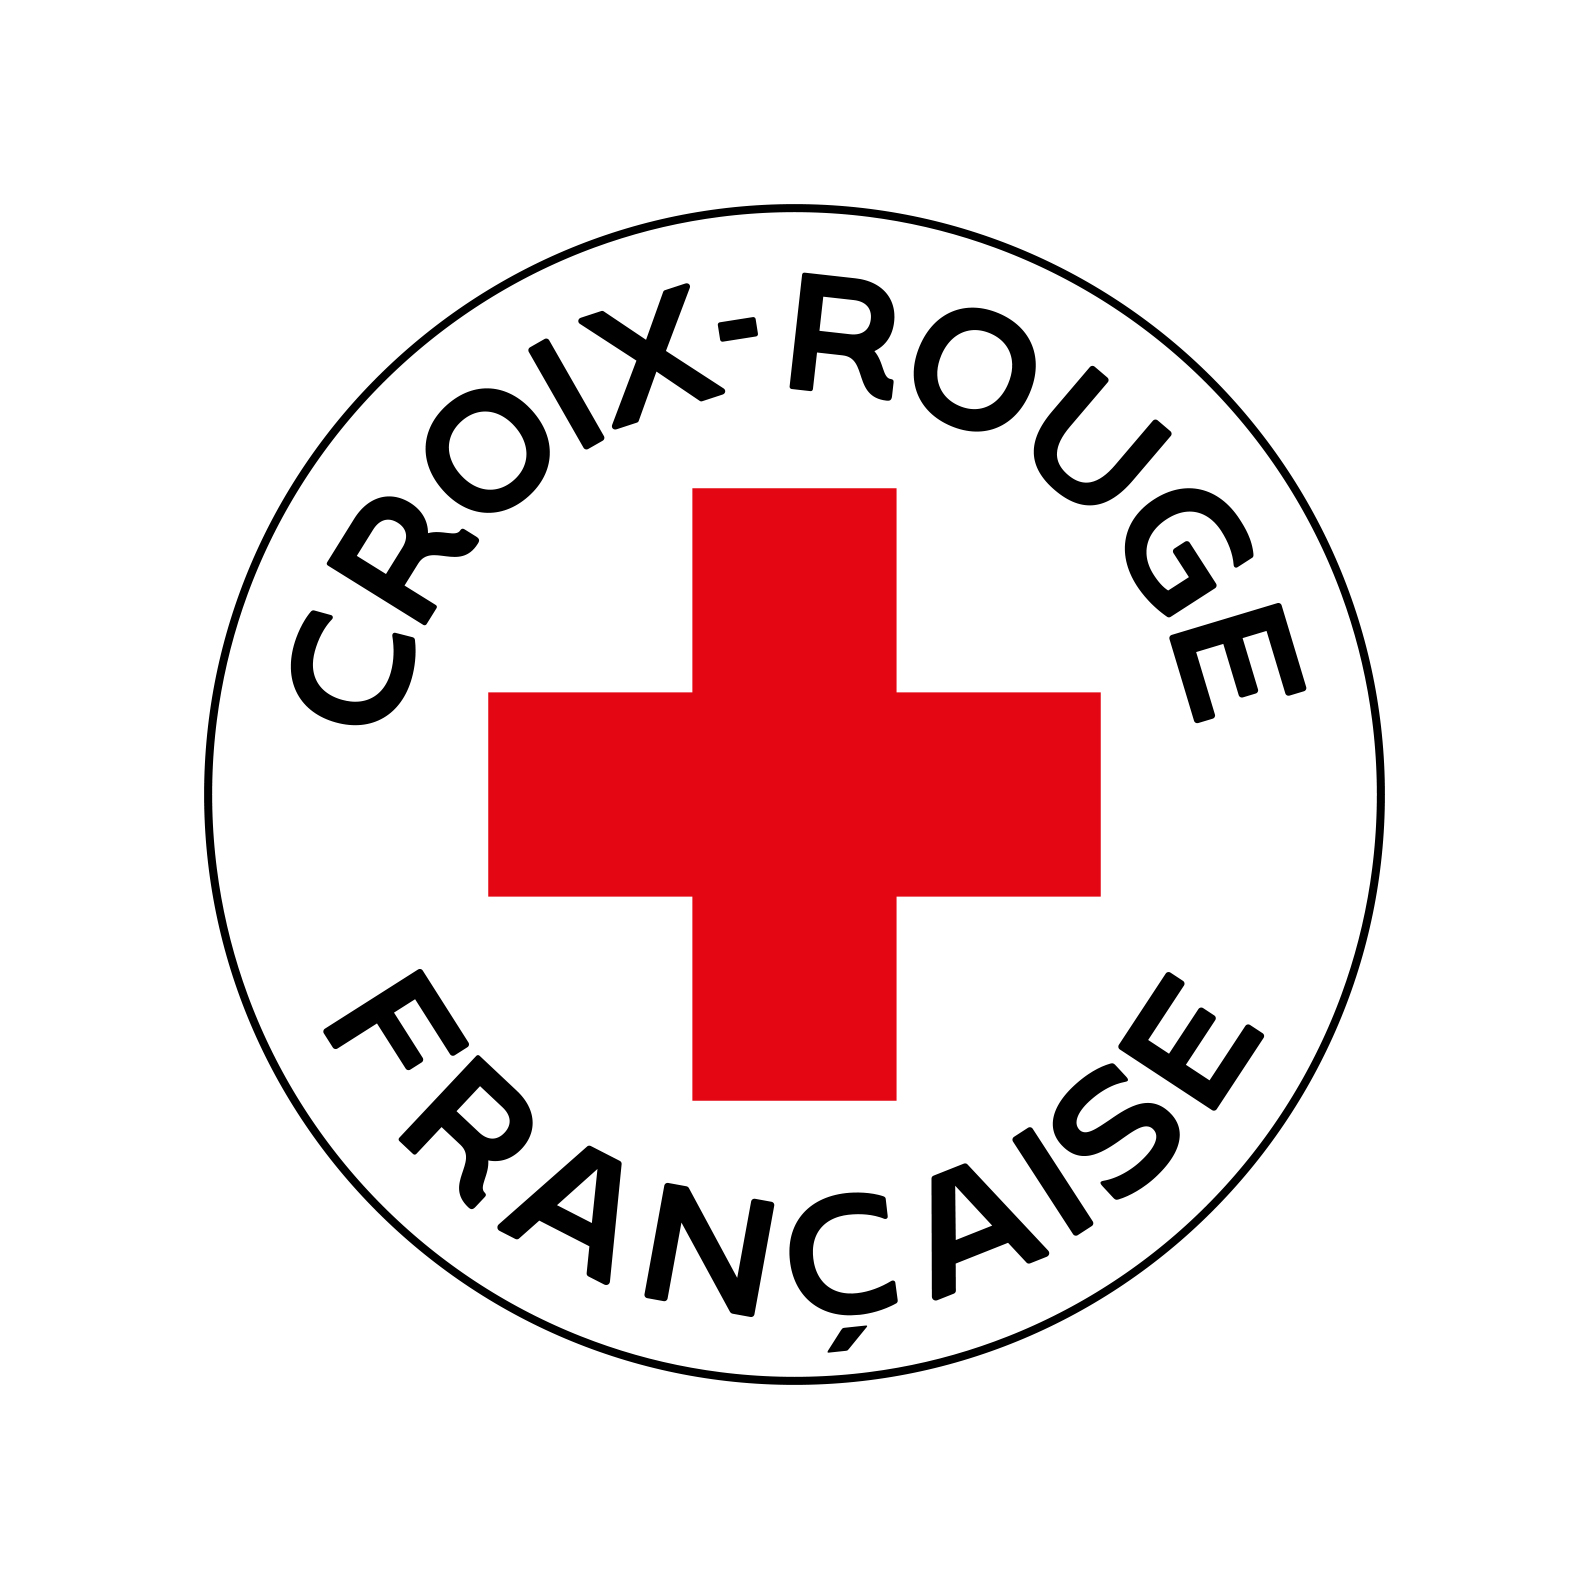 logo croix rouge francaise